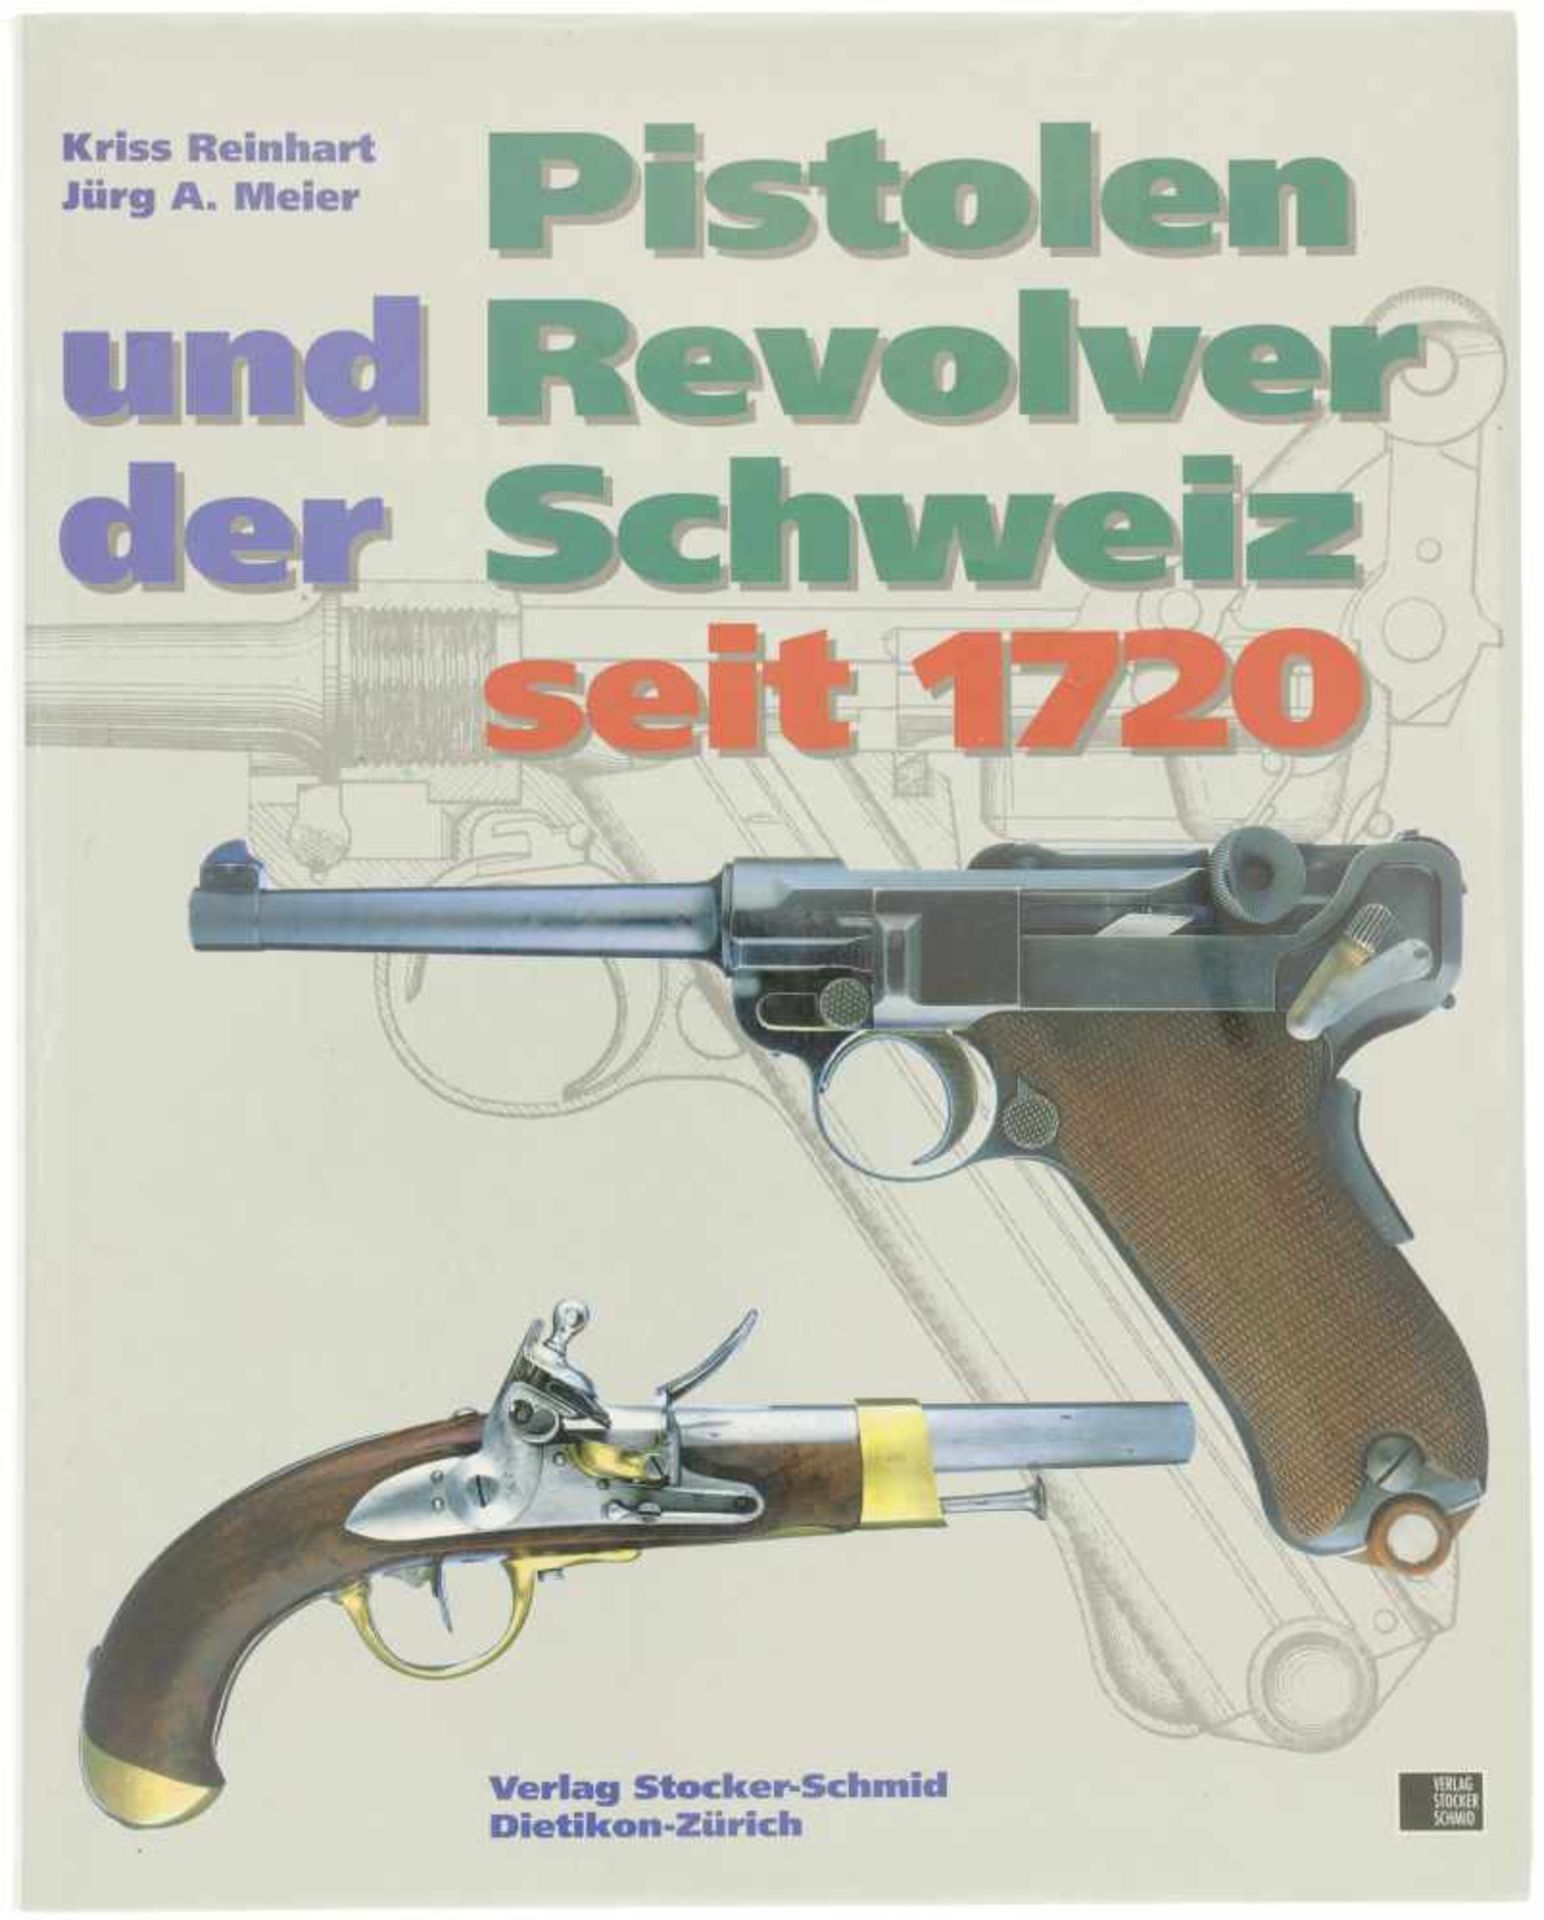 Pistolen und Revolver der Schweiz Autoren Christian Reinhart, Michael am Rhyn und Jürg A.Meier.